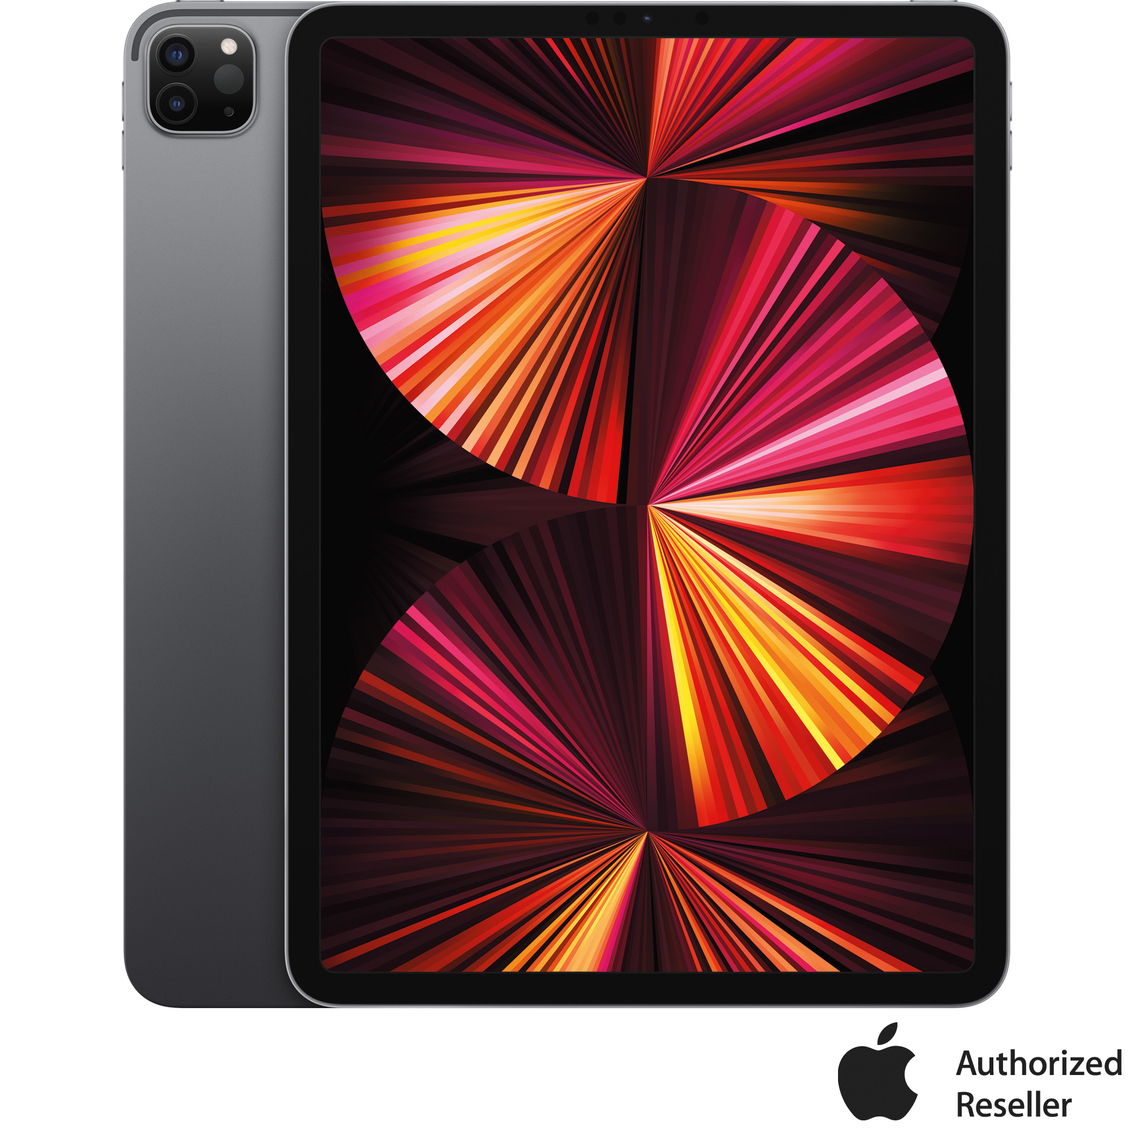 Apple Ipad Pro 11 In. 128gb With Wi-fi (latest Model) | Ipads 